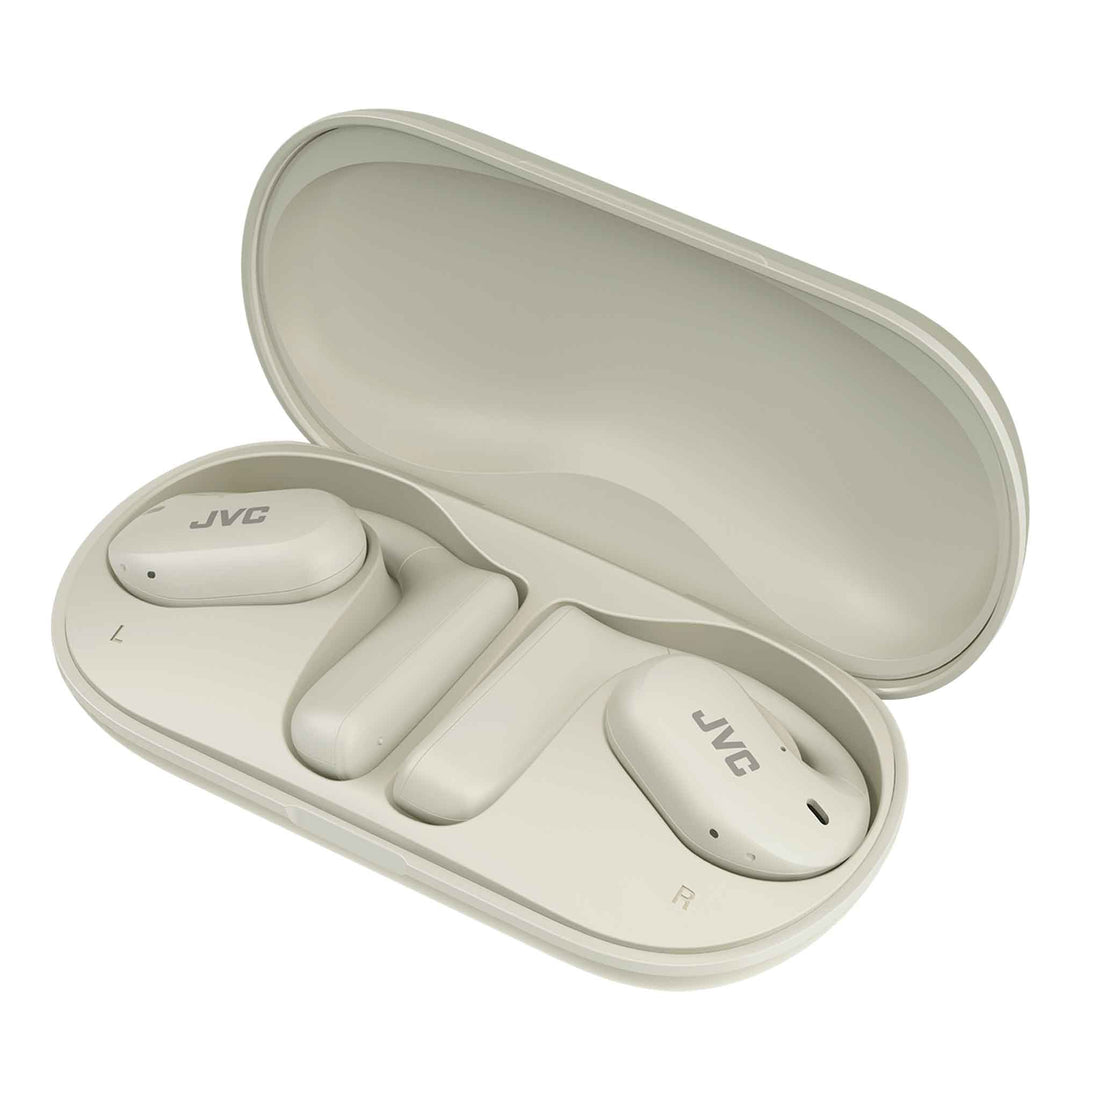 hanp35t in white open-earphones charging case